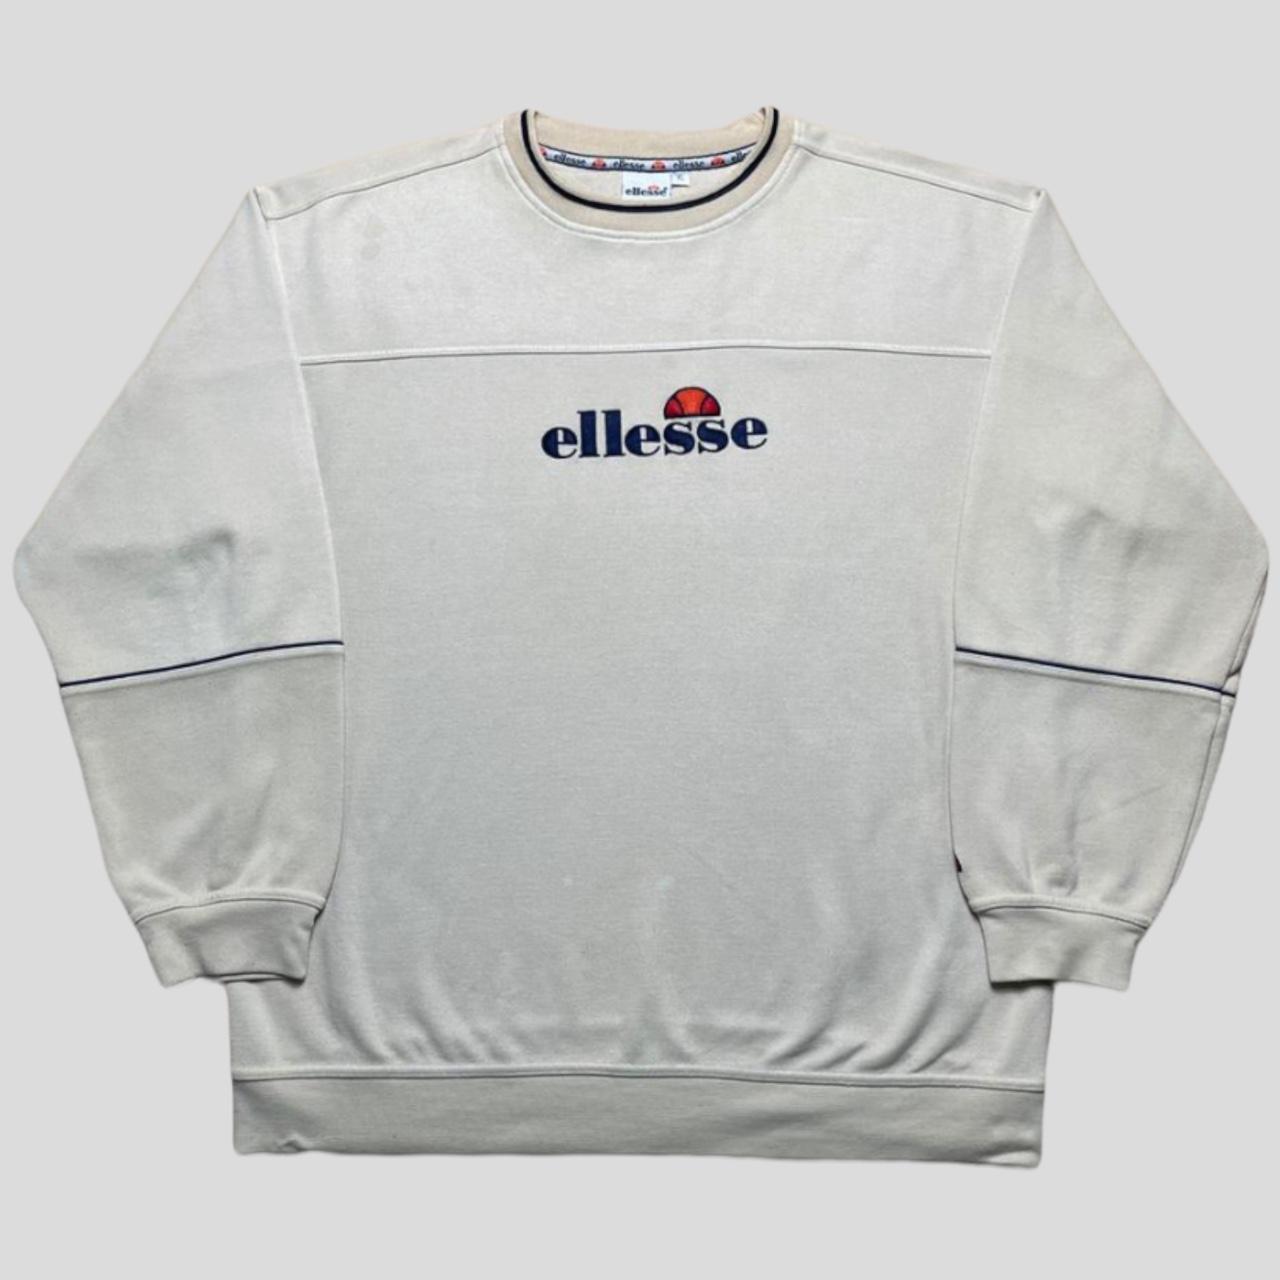 Vintage Ellesse sweatshirt 0853 - 90’s Ellesse cream... - Depop